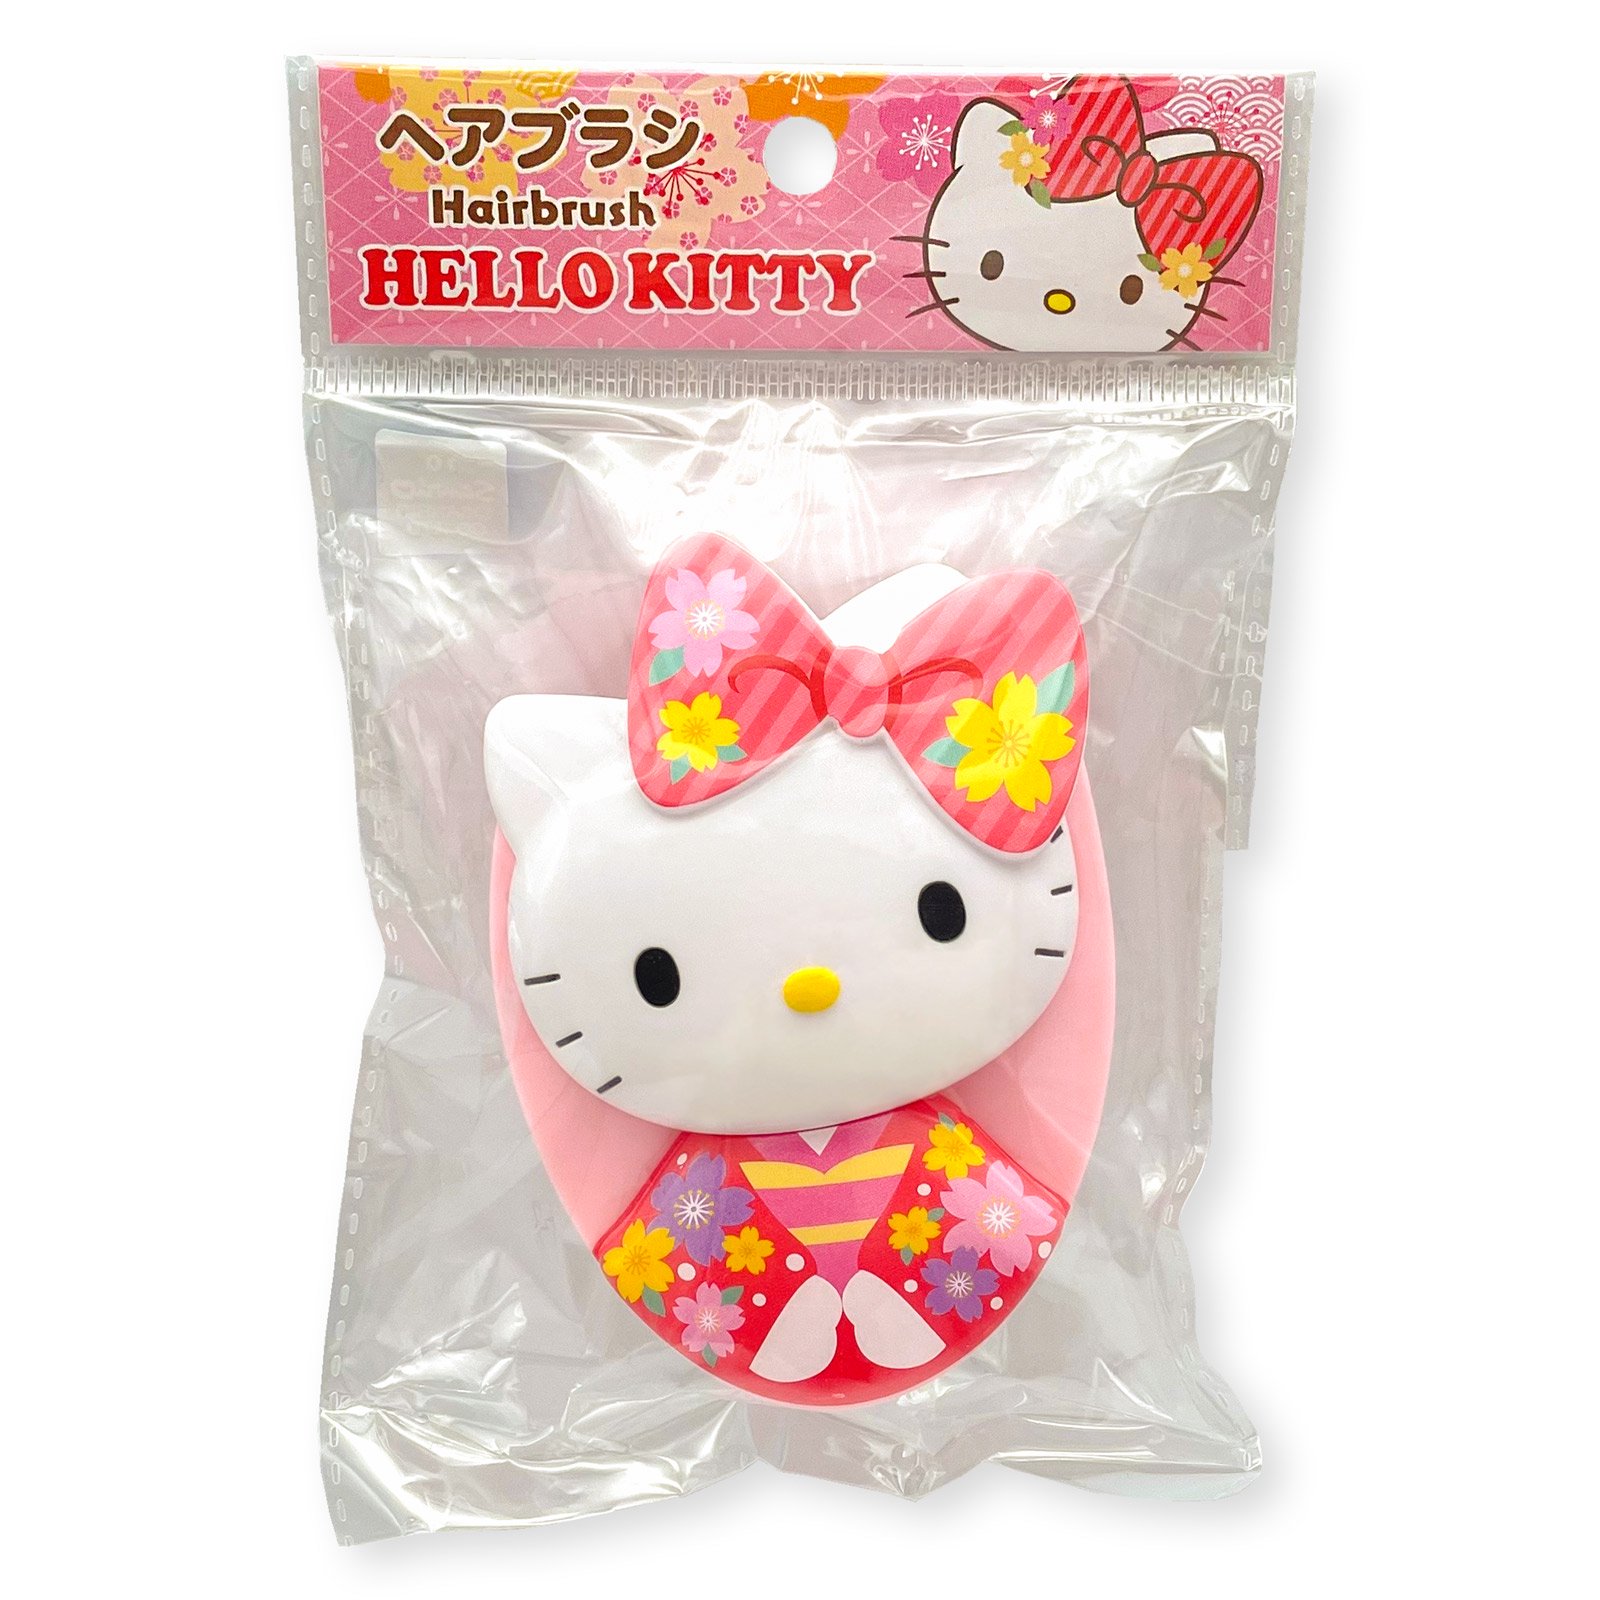 真愛日本 凱蒂貓kitty 和服櫻花紅 造型手握按摩梳 蛋形梳 造型梳 氣墊梳 按摩梳 梳子 梳 便攜 按摩頭皮